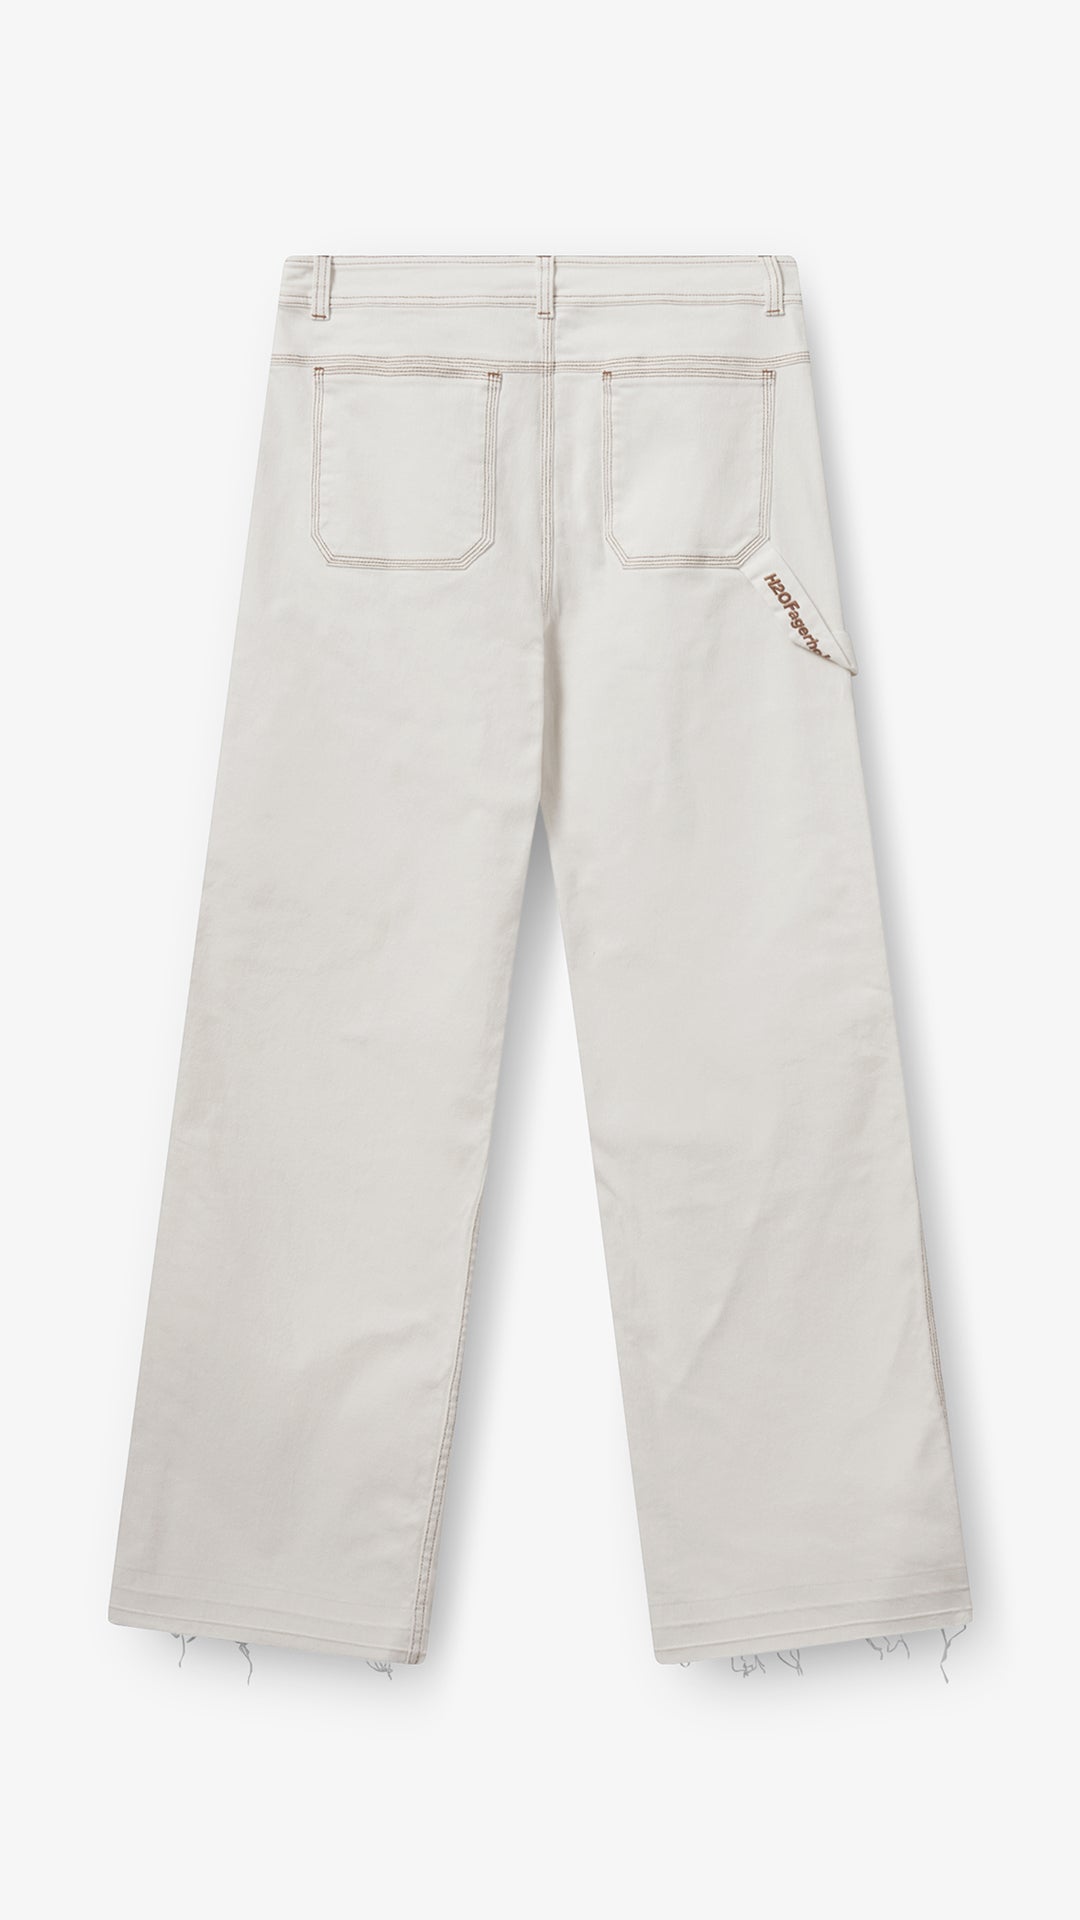 H2OFagerholt Aljinz Jeans Pants 1003 Cream White